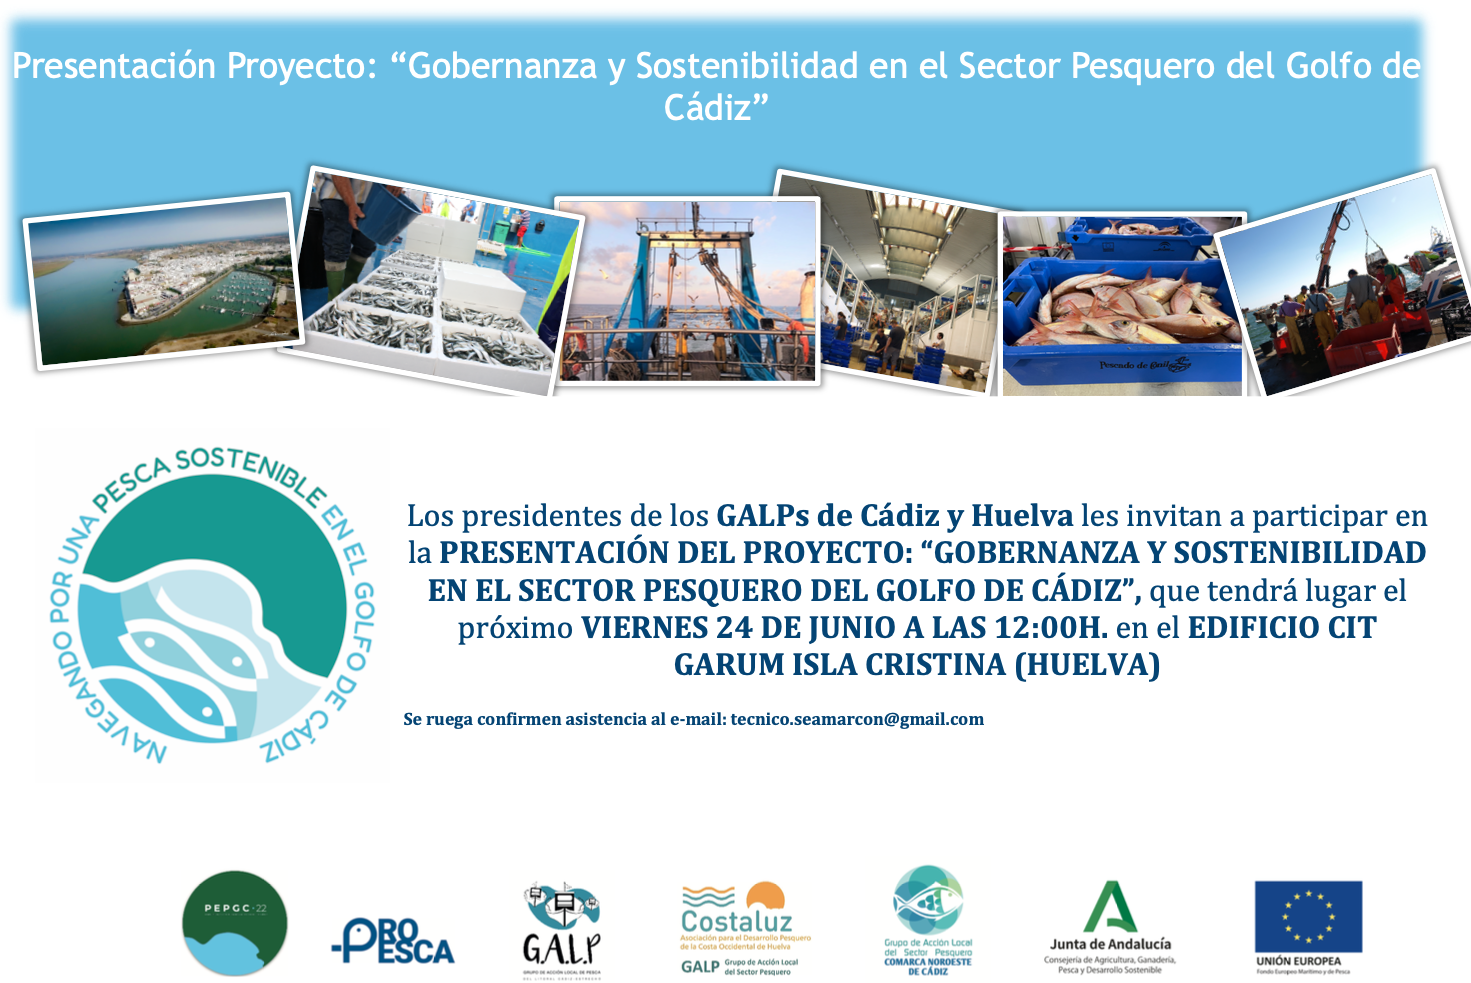 Presentación del proyecto: “Gobernanza y sostenibilidad del sector pesquero del Golfo de Cádiz”.